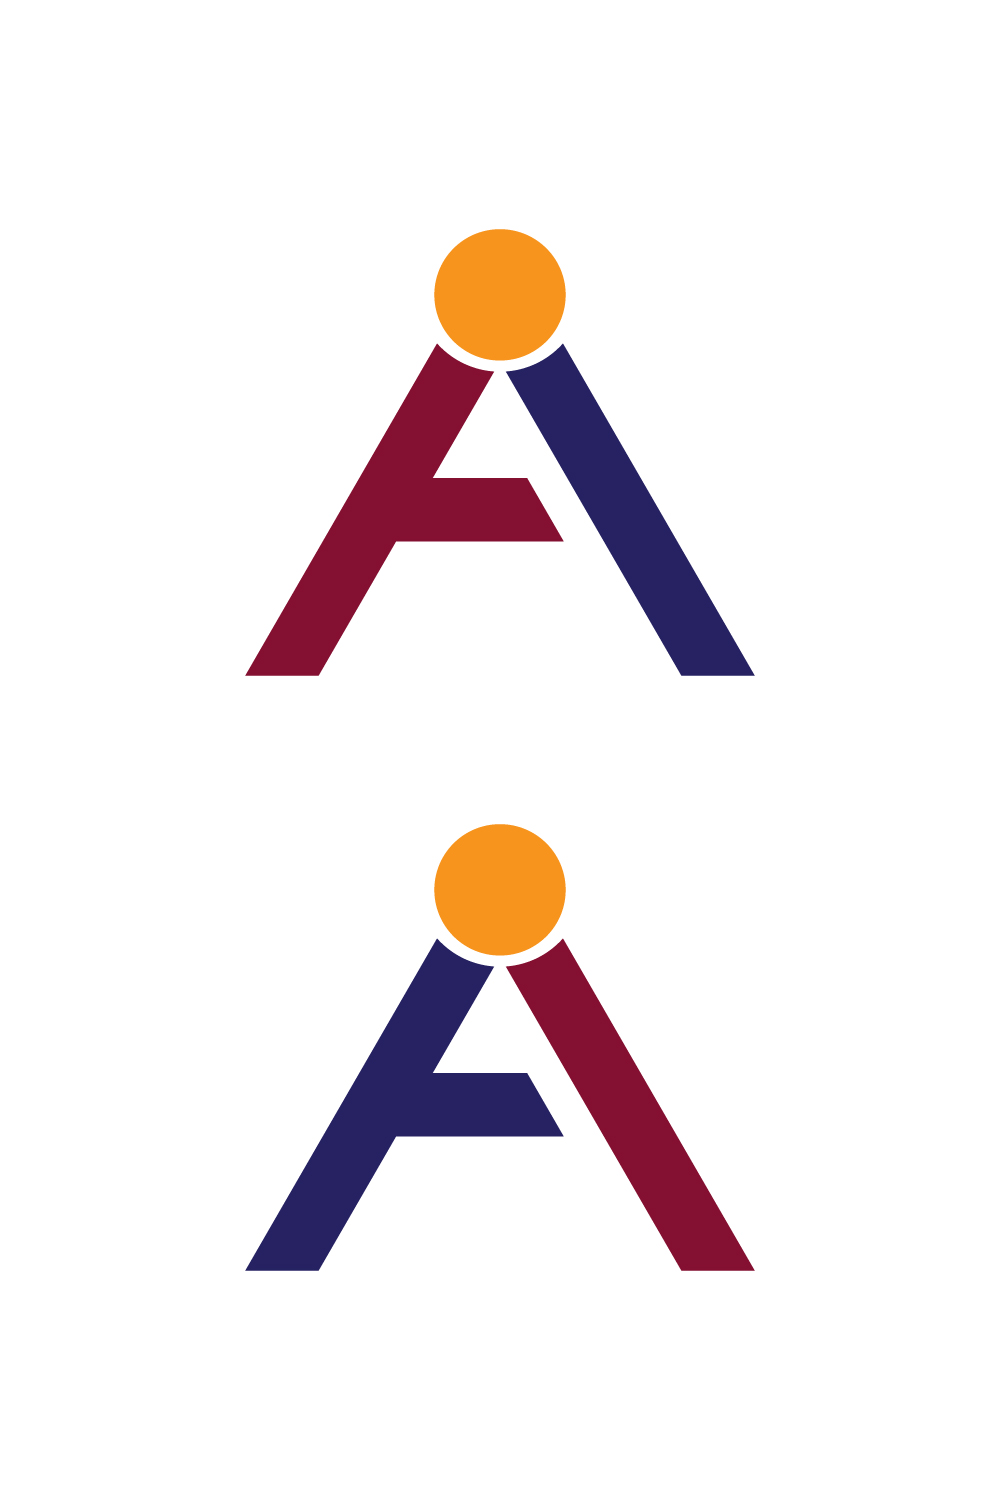 A I Letter Logo Design pinterest image.